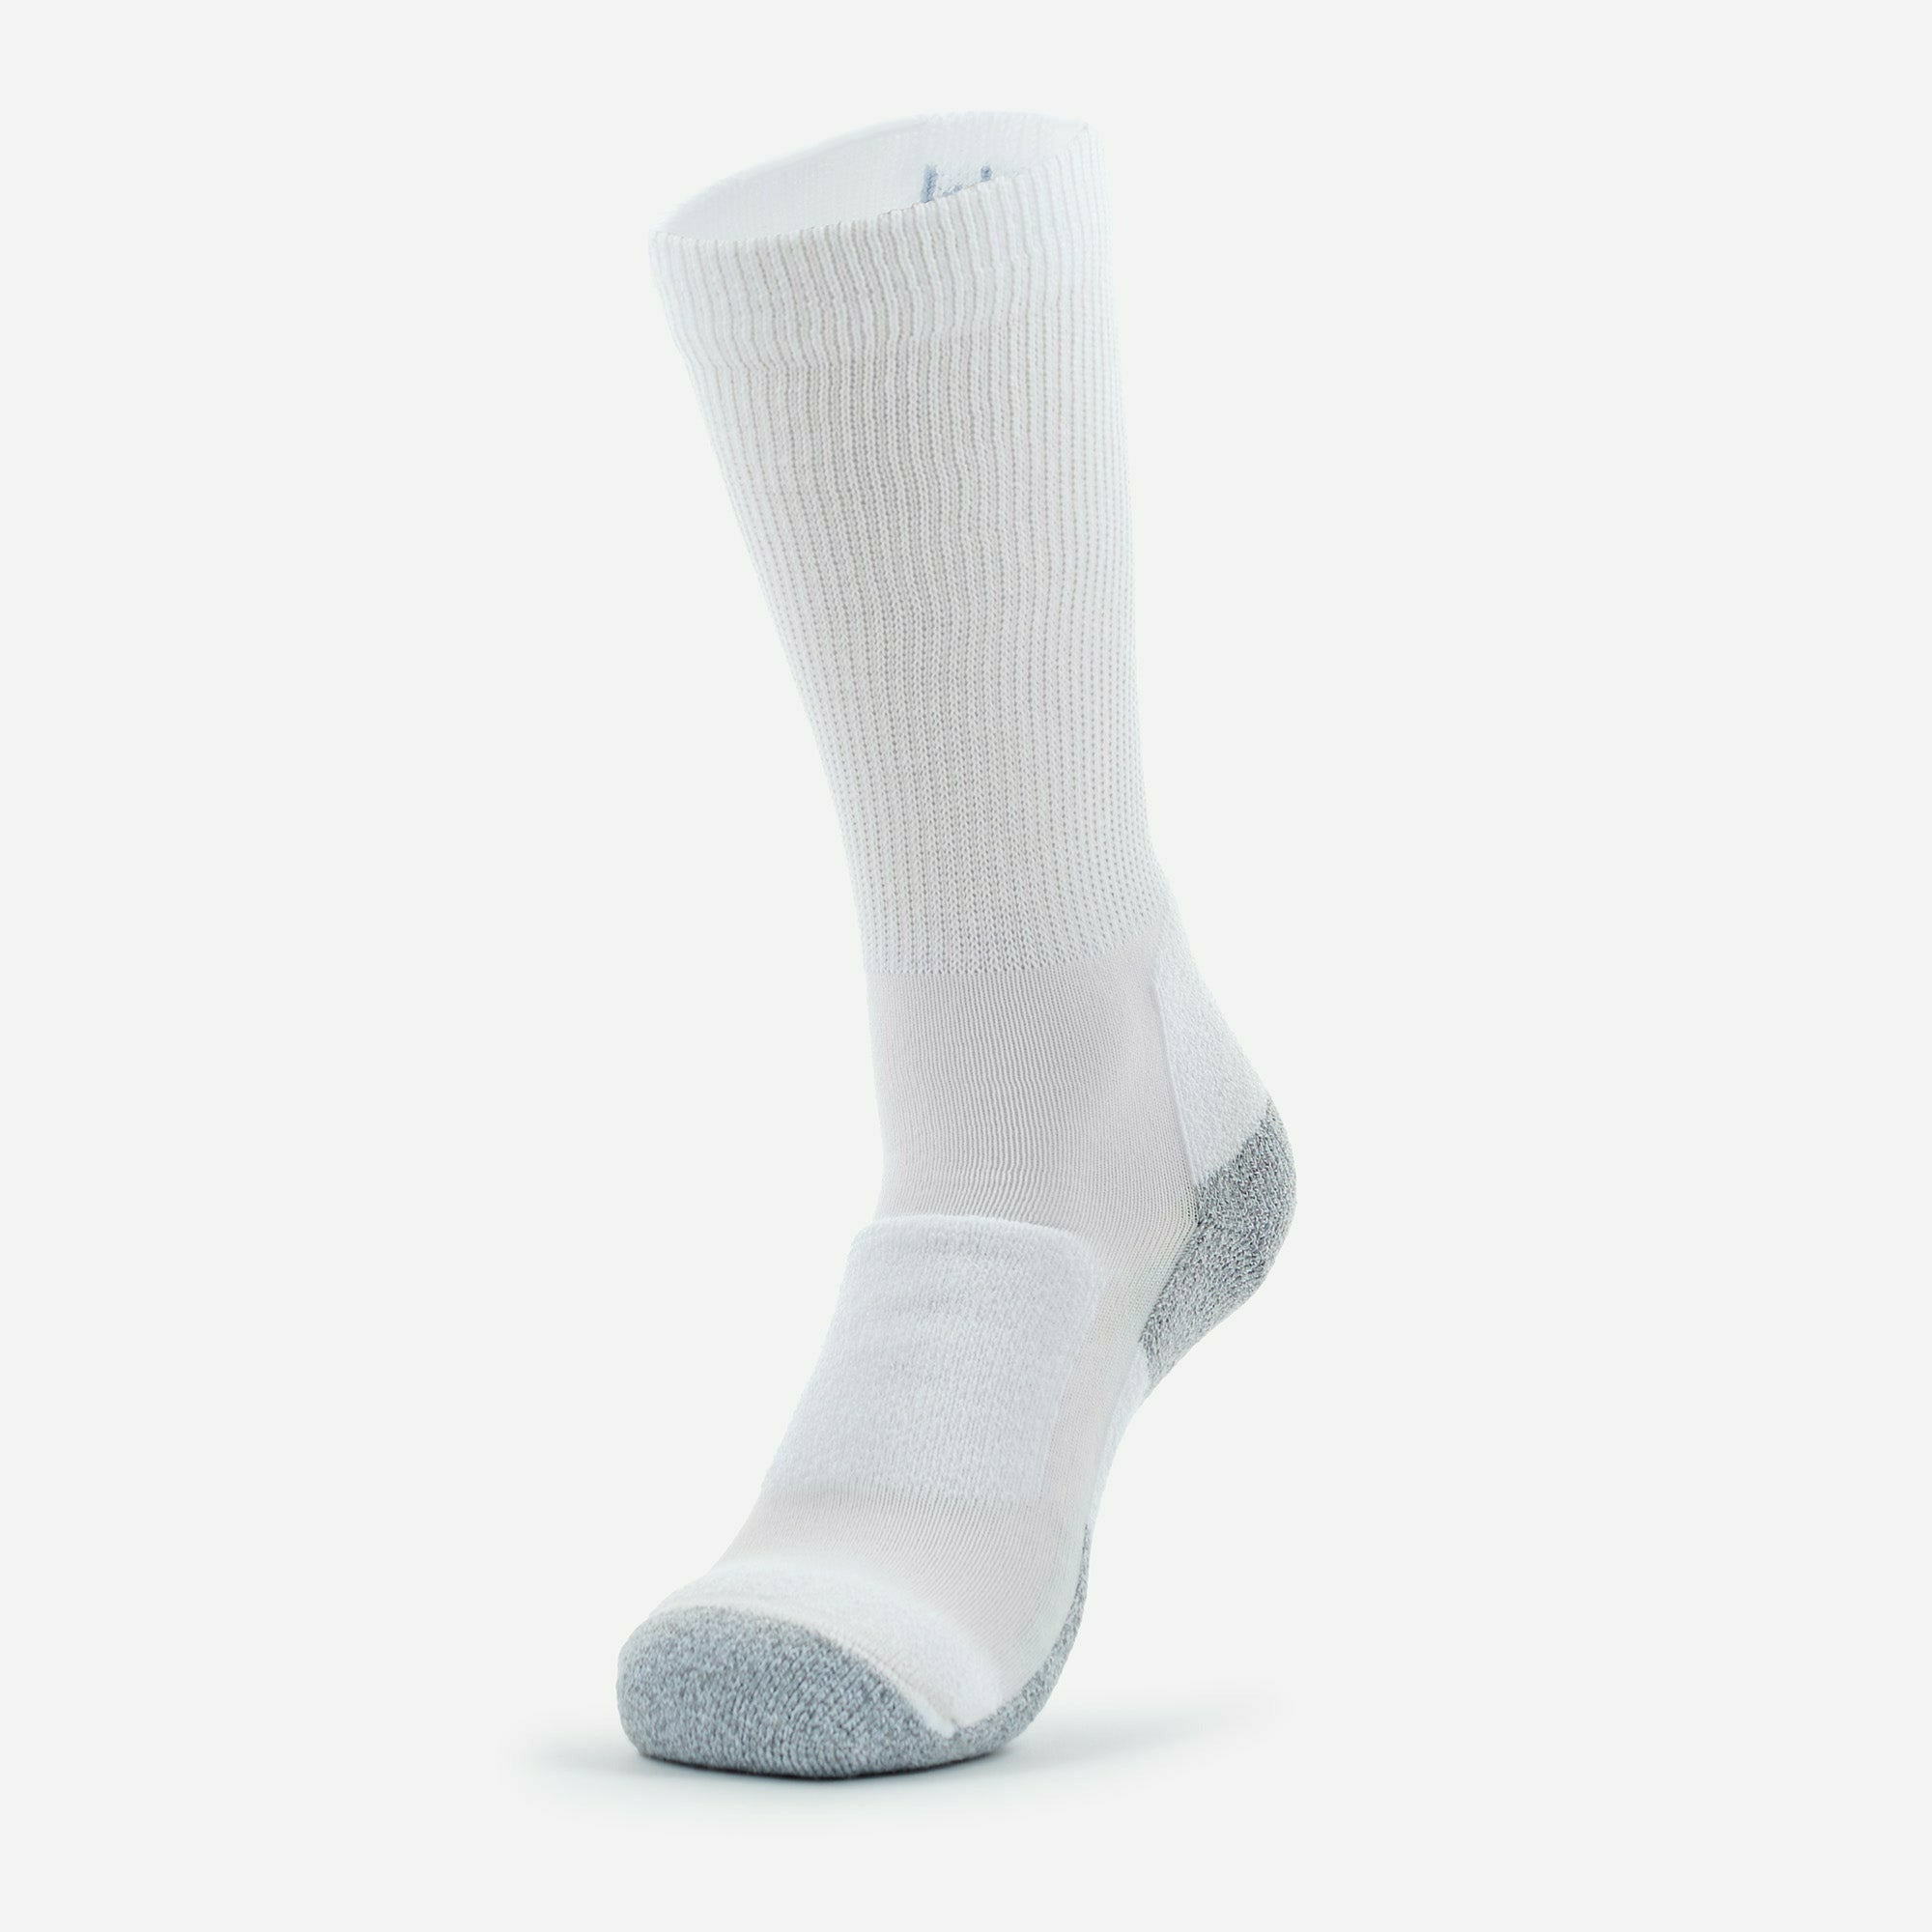 Thorlo Womens Thin Cushion Walking Socks | GoBros.com